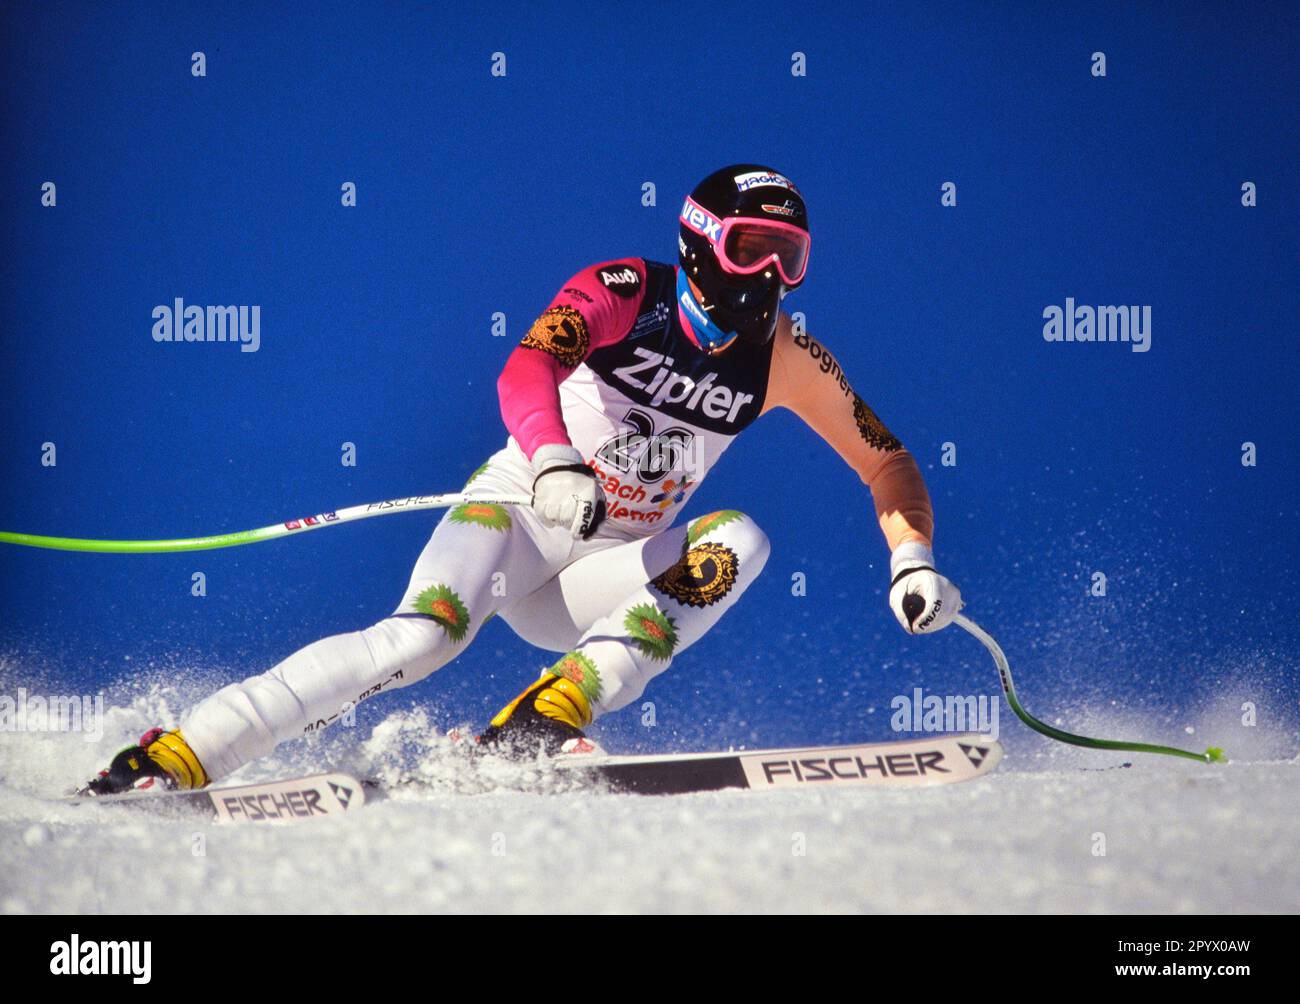 SKI ALPIN STAGIONE 90/91 Campionati del mondo 1991 Saalbach-Hinterglemm Downhill Men 27.01.1991 Markus WASMEIER (GER) xxNOxMODELxRELEASExx [traduzione automatica]- AUSTRIA OUT Foto Stock